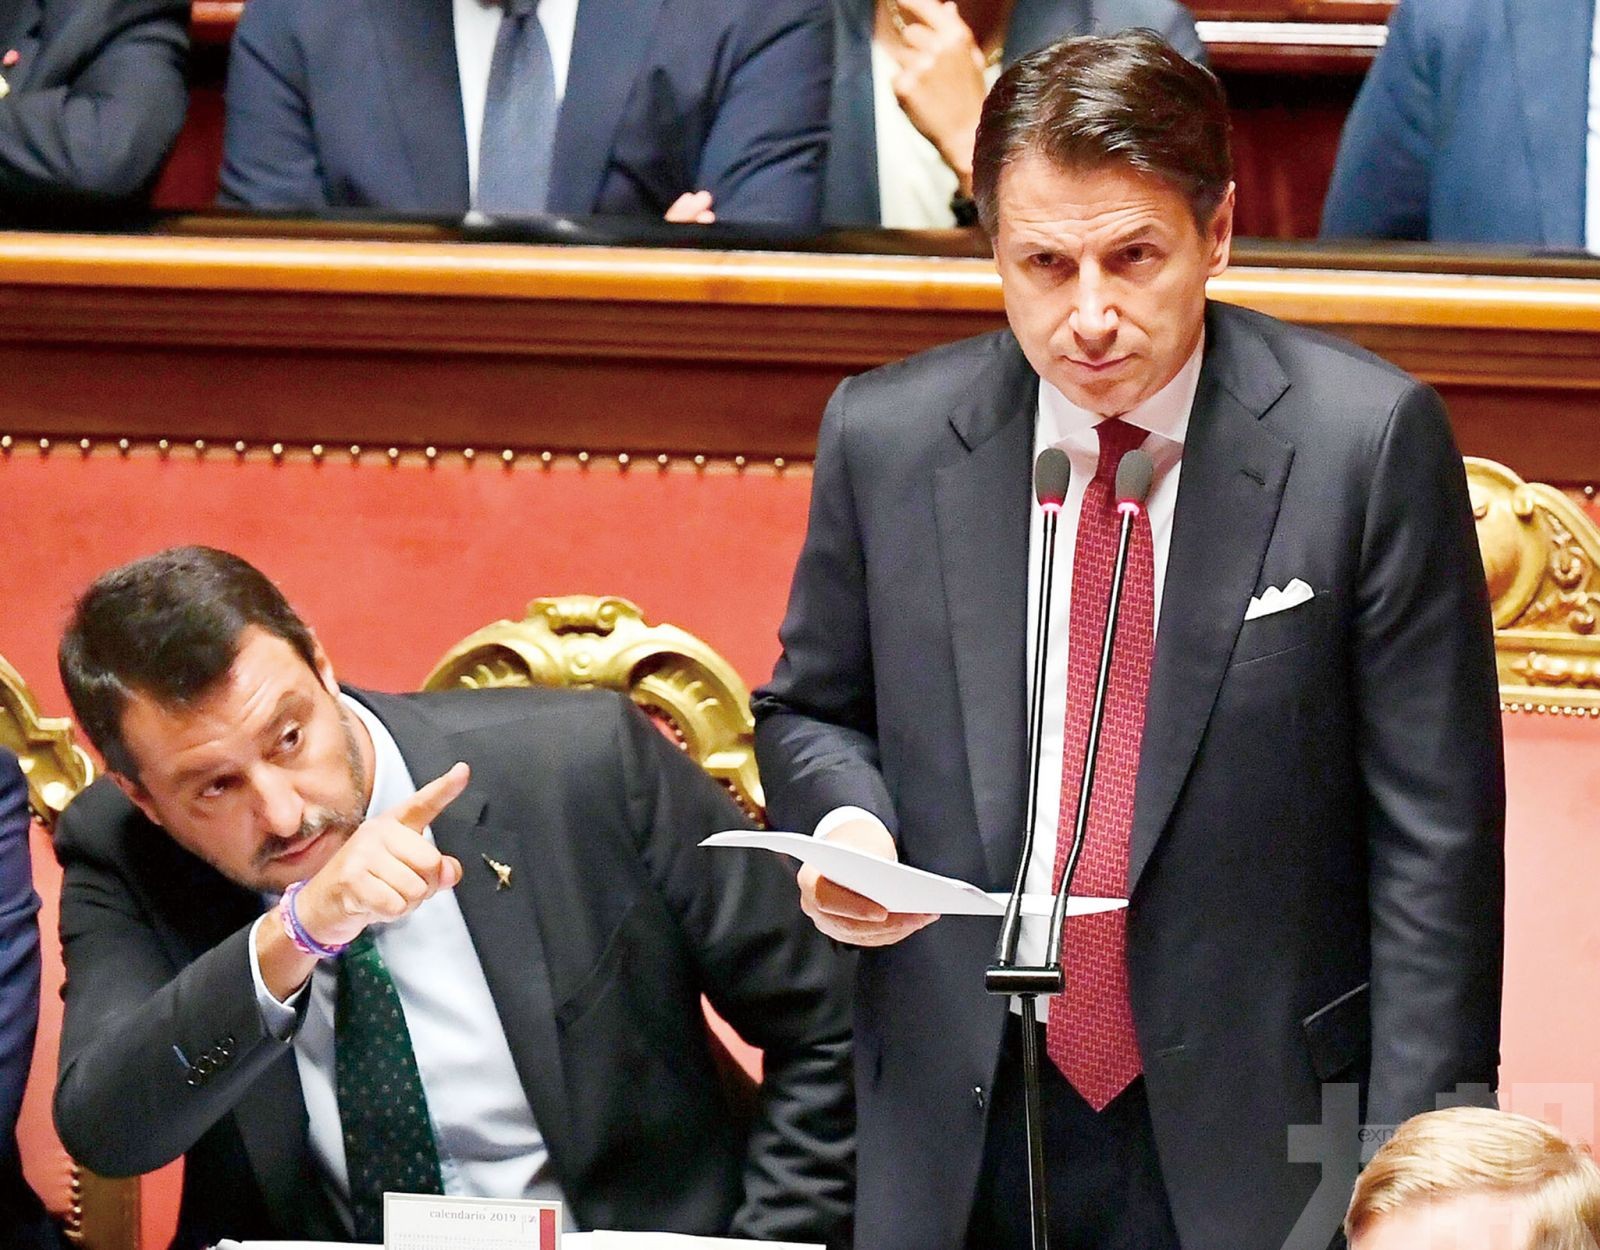 總理辭職 政府分裂 意大利或提前大選